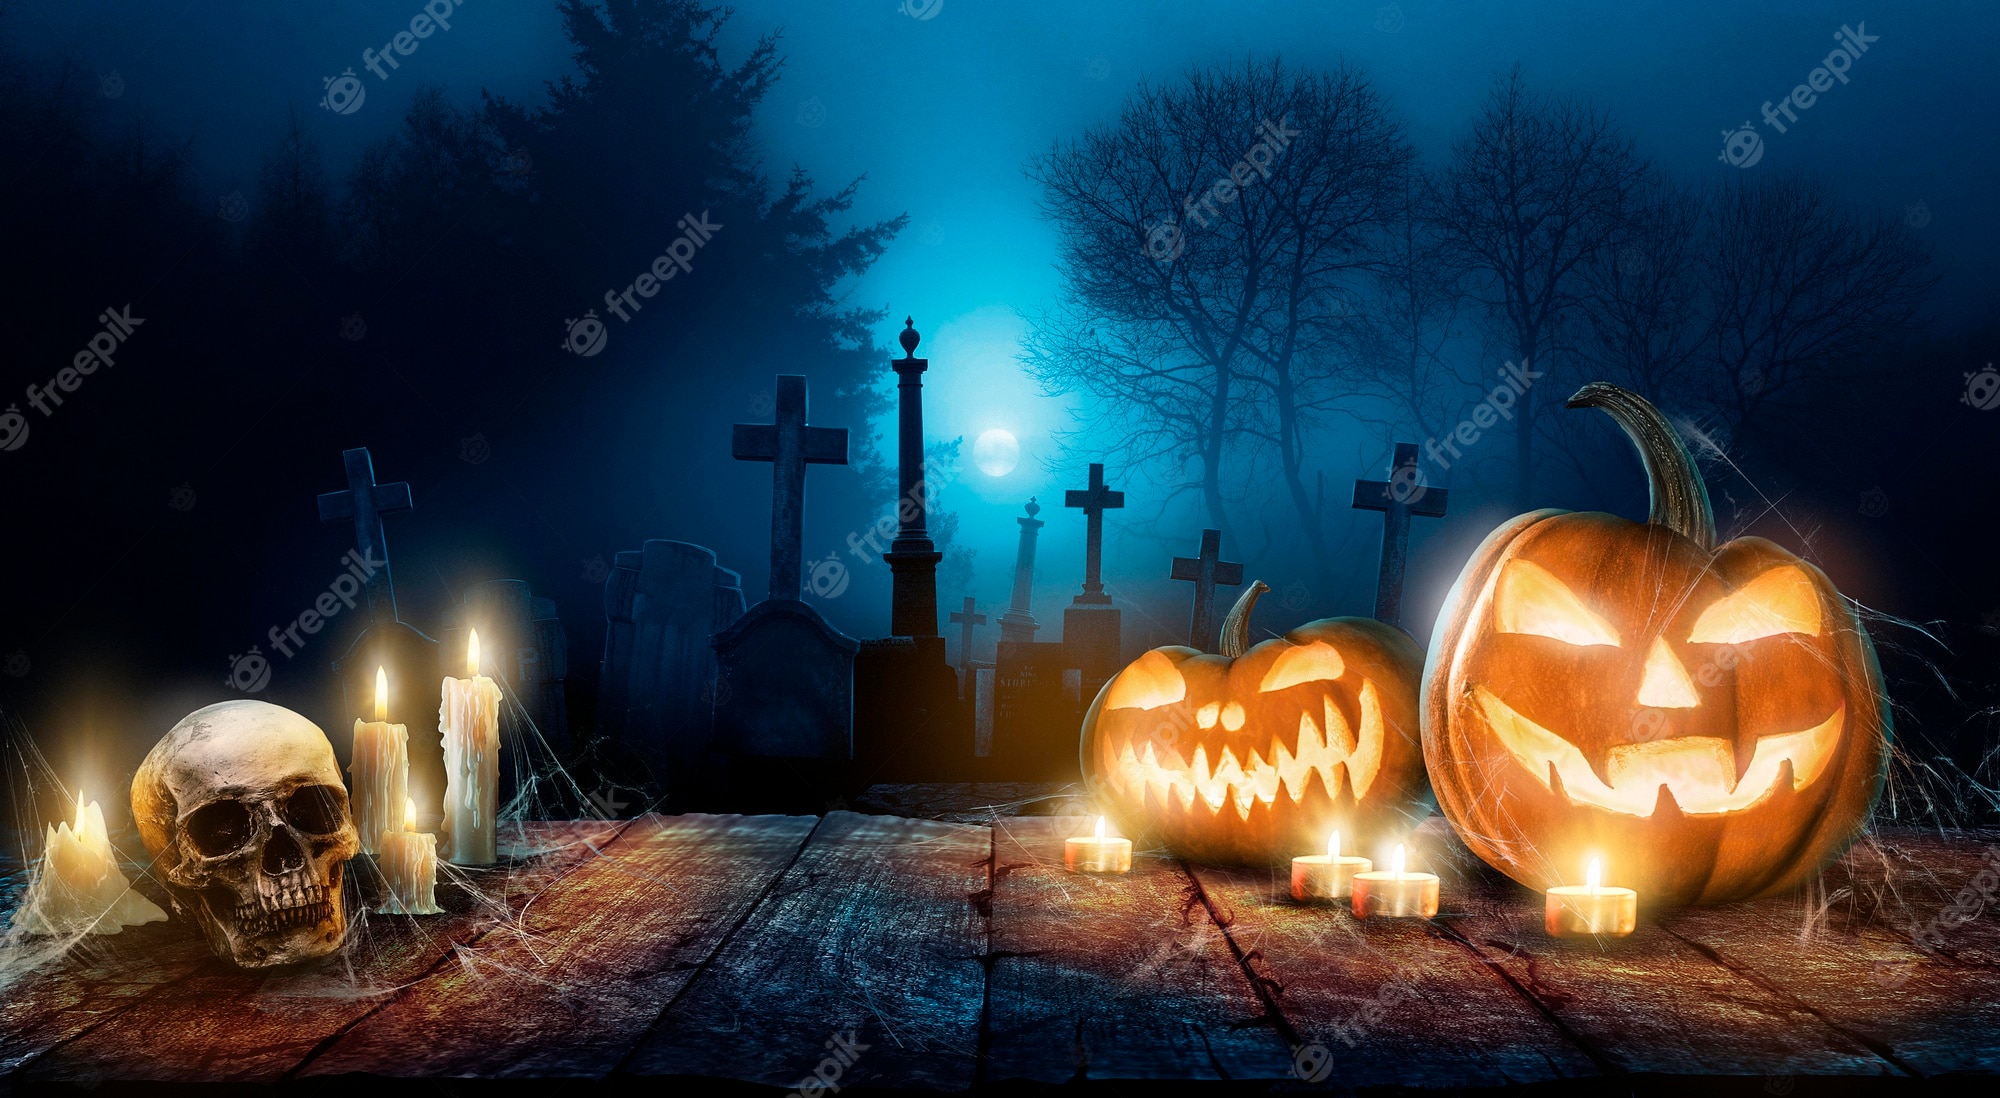 Download halloween desktop background Bhmpics